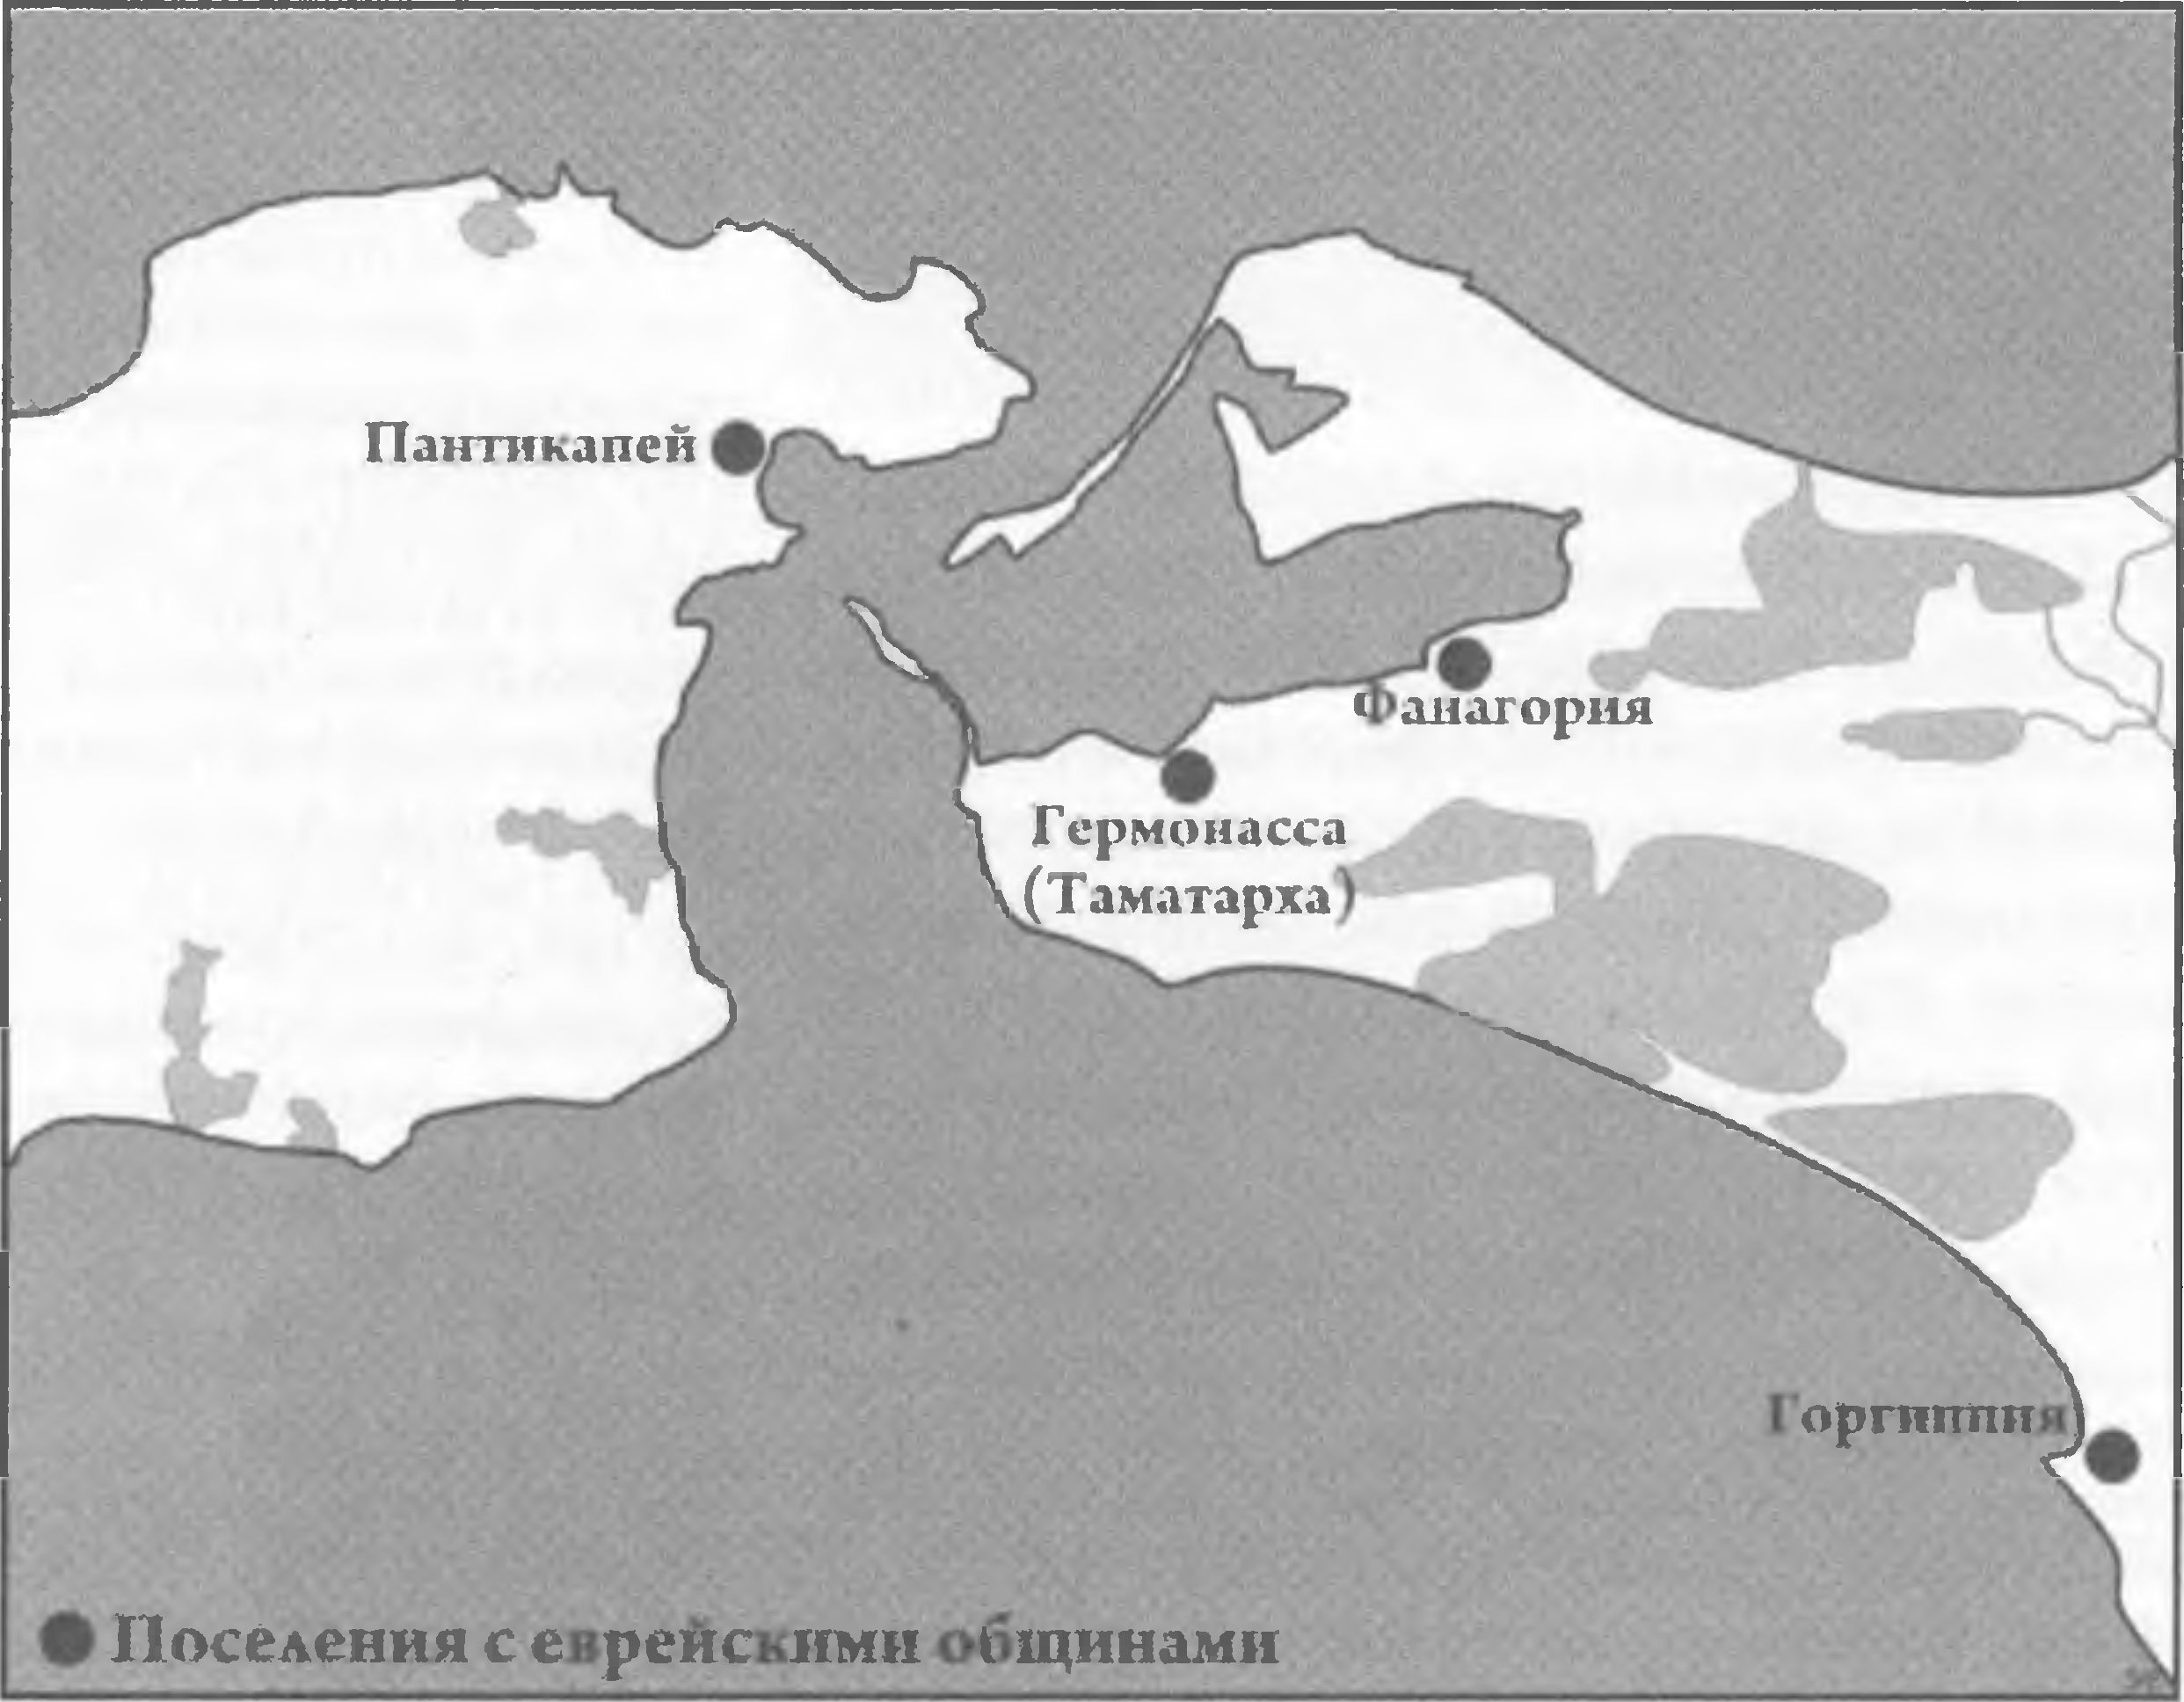 Карта поселений с еврейскими общинами на территории Керченского и Таманского полуостровов в античное время